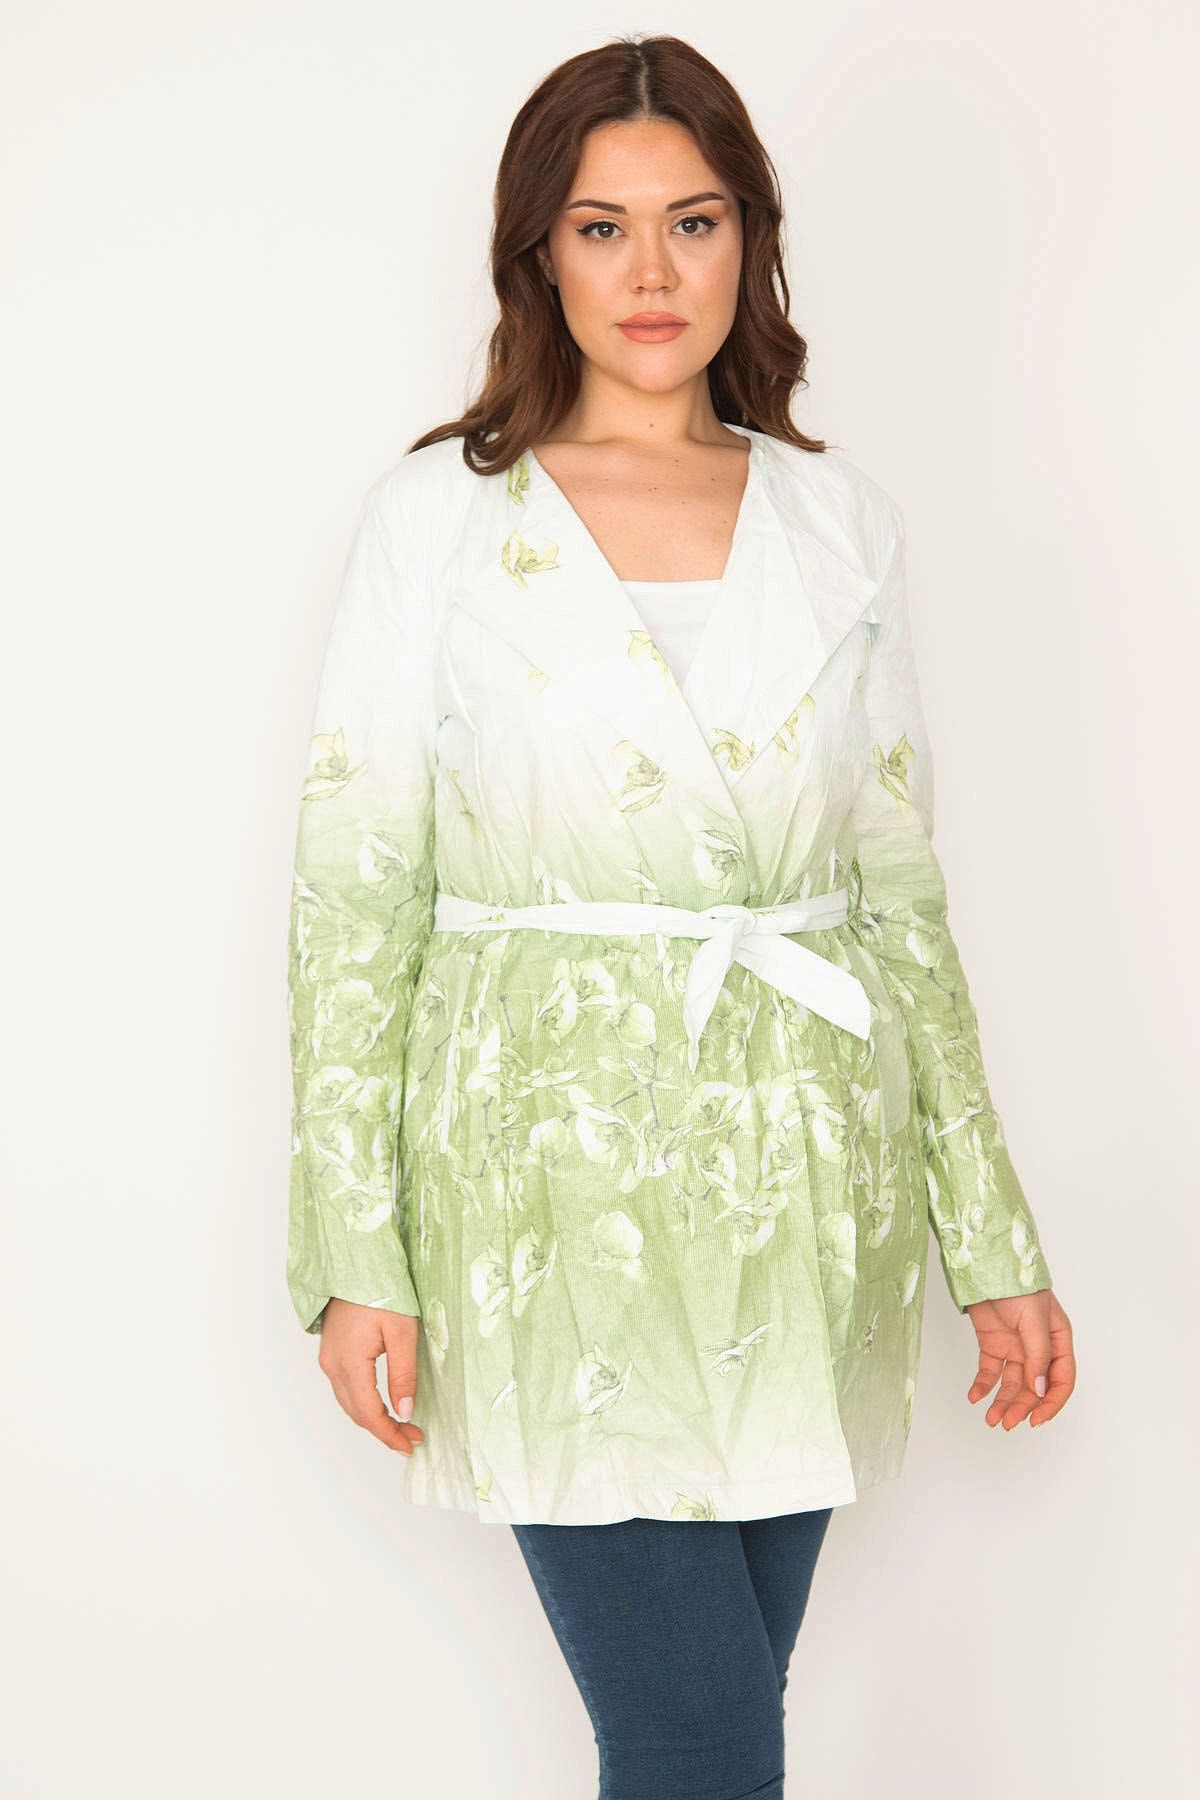 Şans Tekstil Kadın Yeşil Çiçek Desenli Astarsız Ince Kap 85n7196